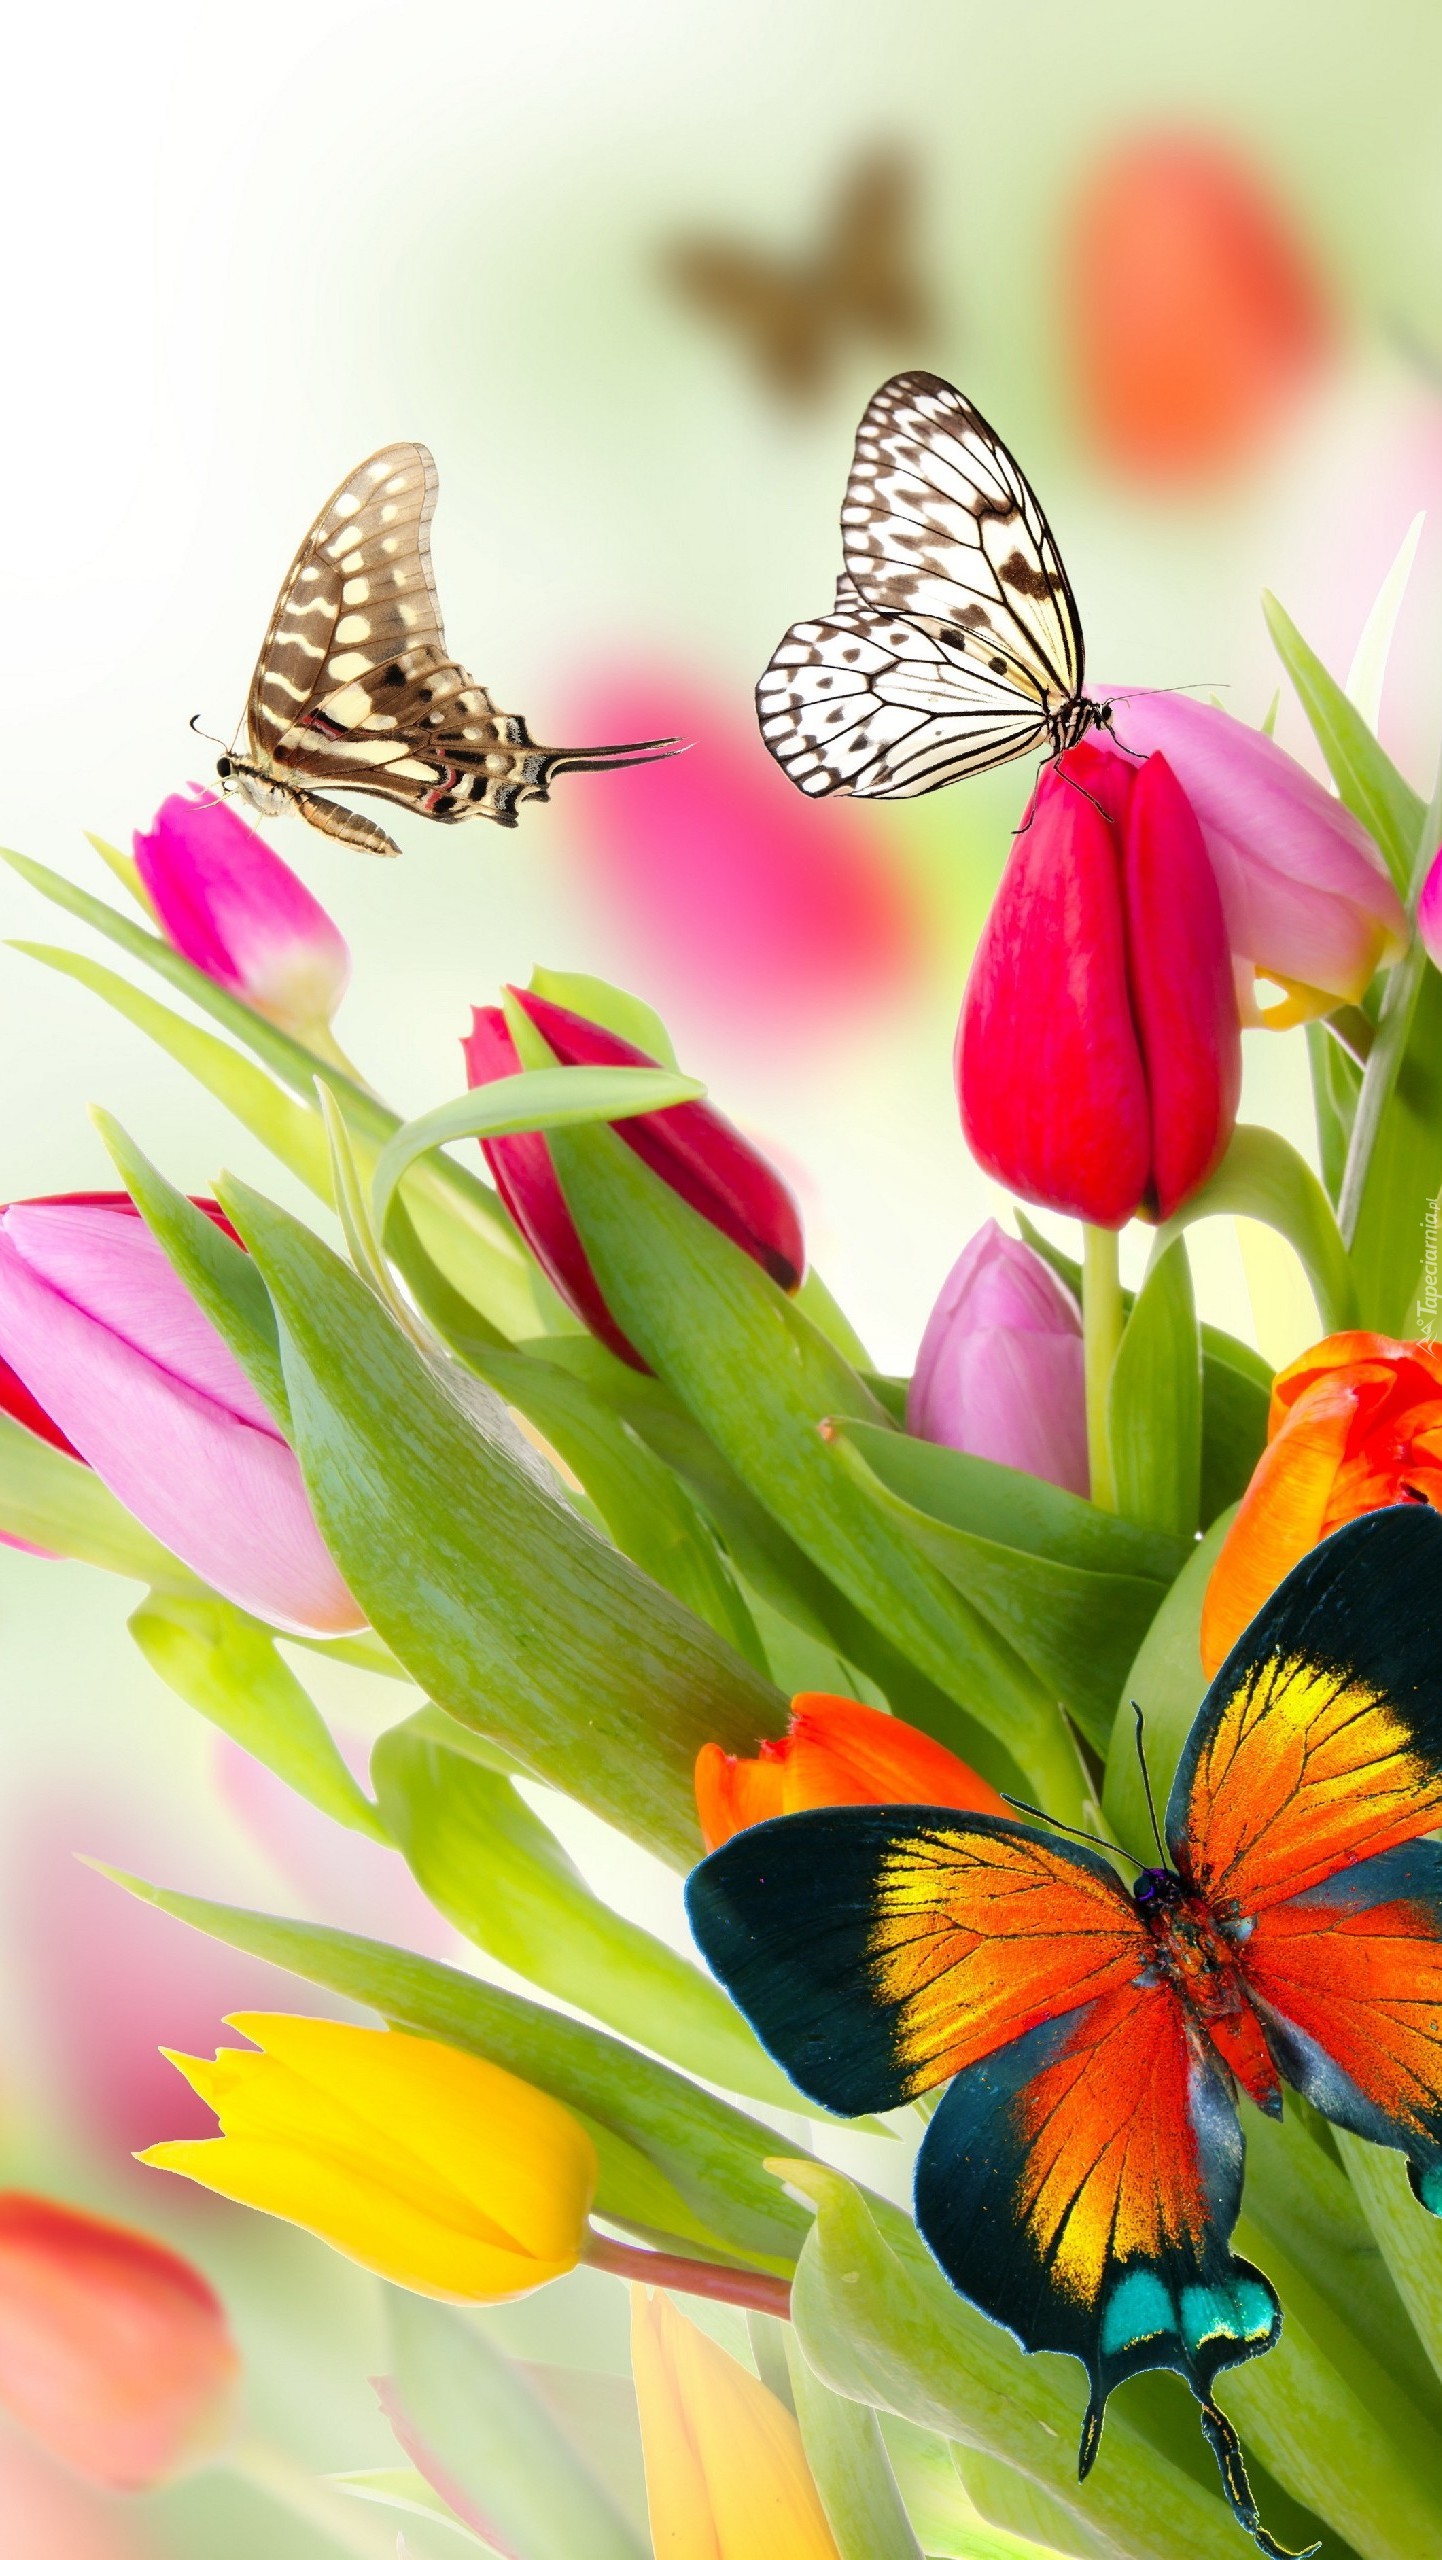 Motyle wśród kolorowych tulipanów